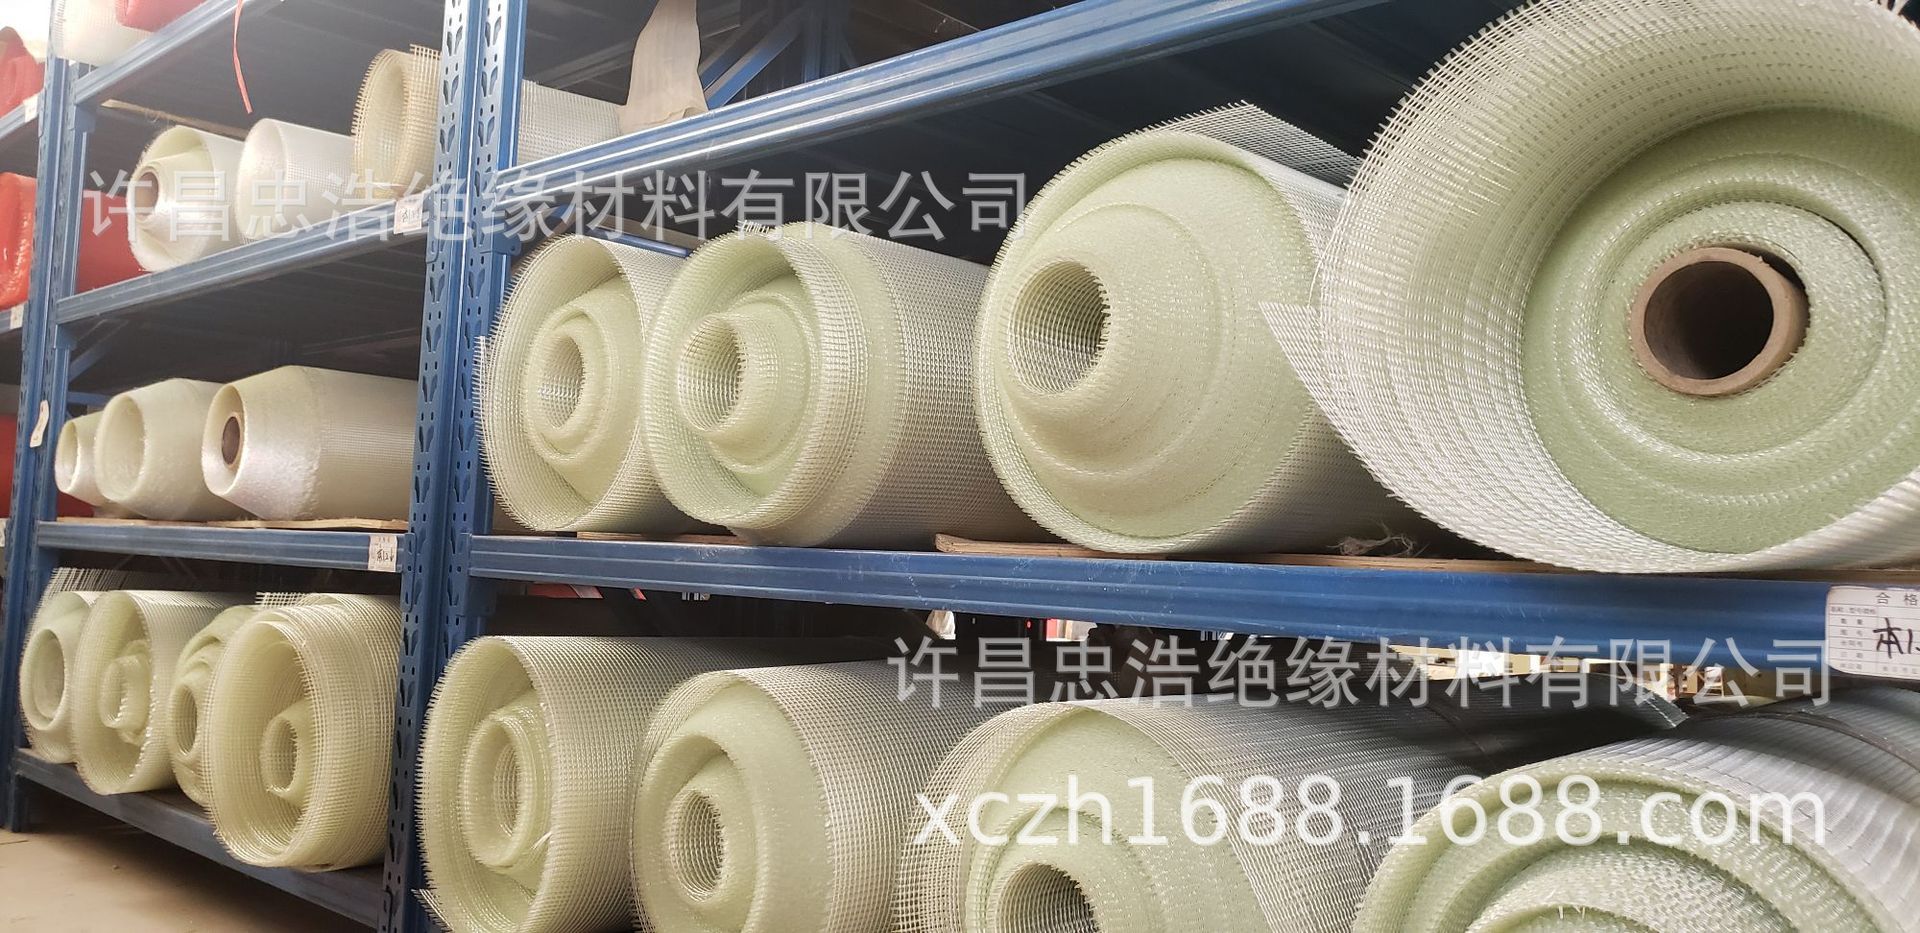 厂家直销玻纤网格布供应专业品质有保障玻纤网格布批发量大从优示例图4